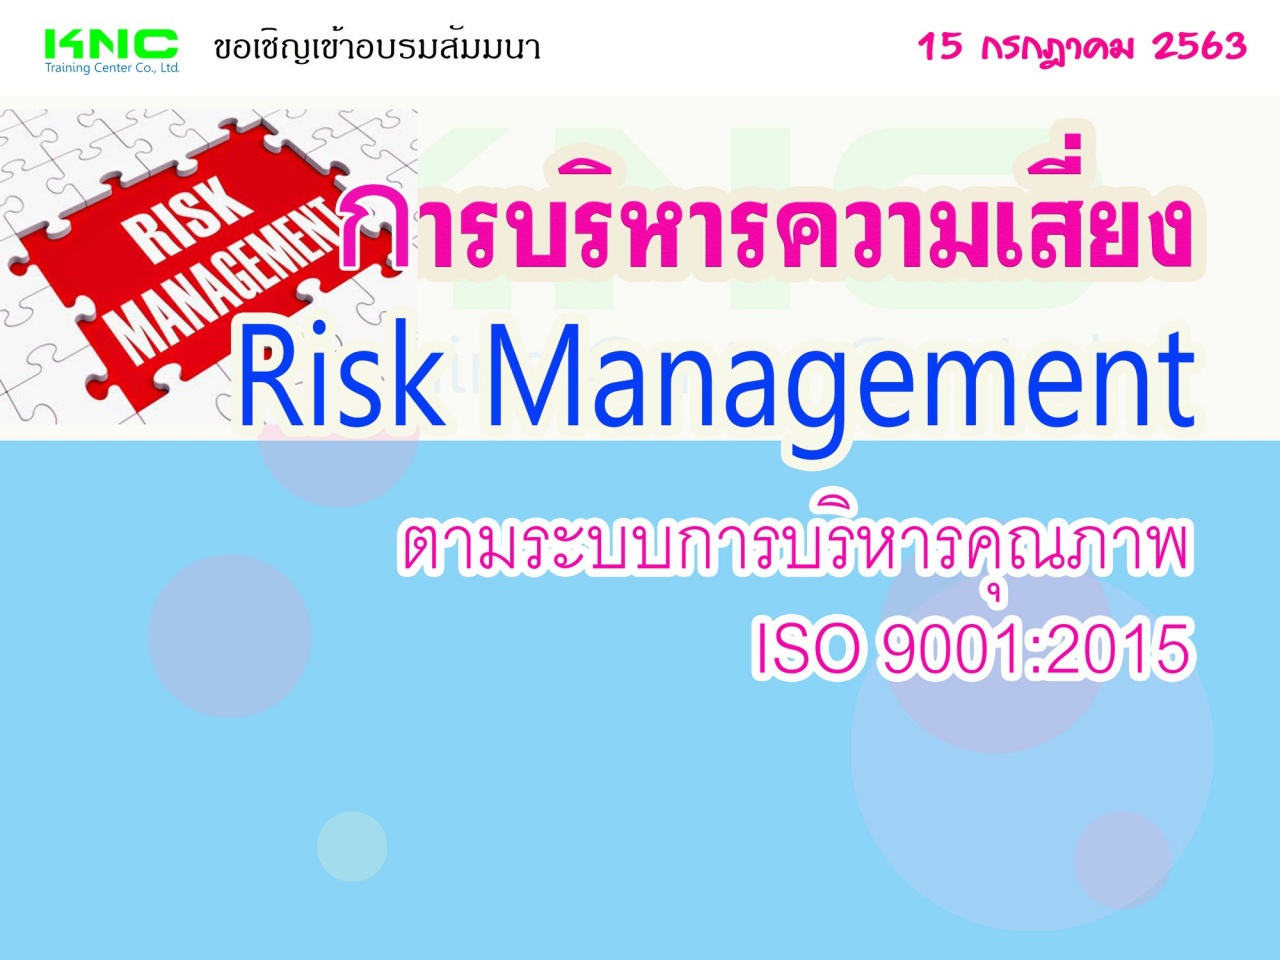 การบริหารความเสี่ยง : Risk Management ตามระบบการบริหารคุณภาพ ISO 9001:2015